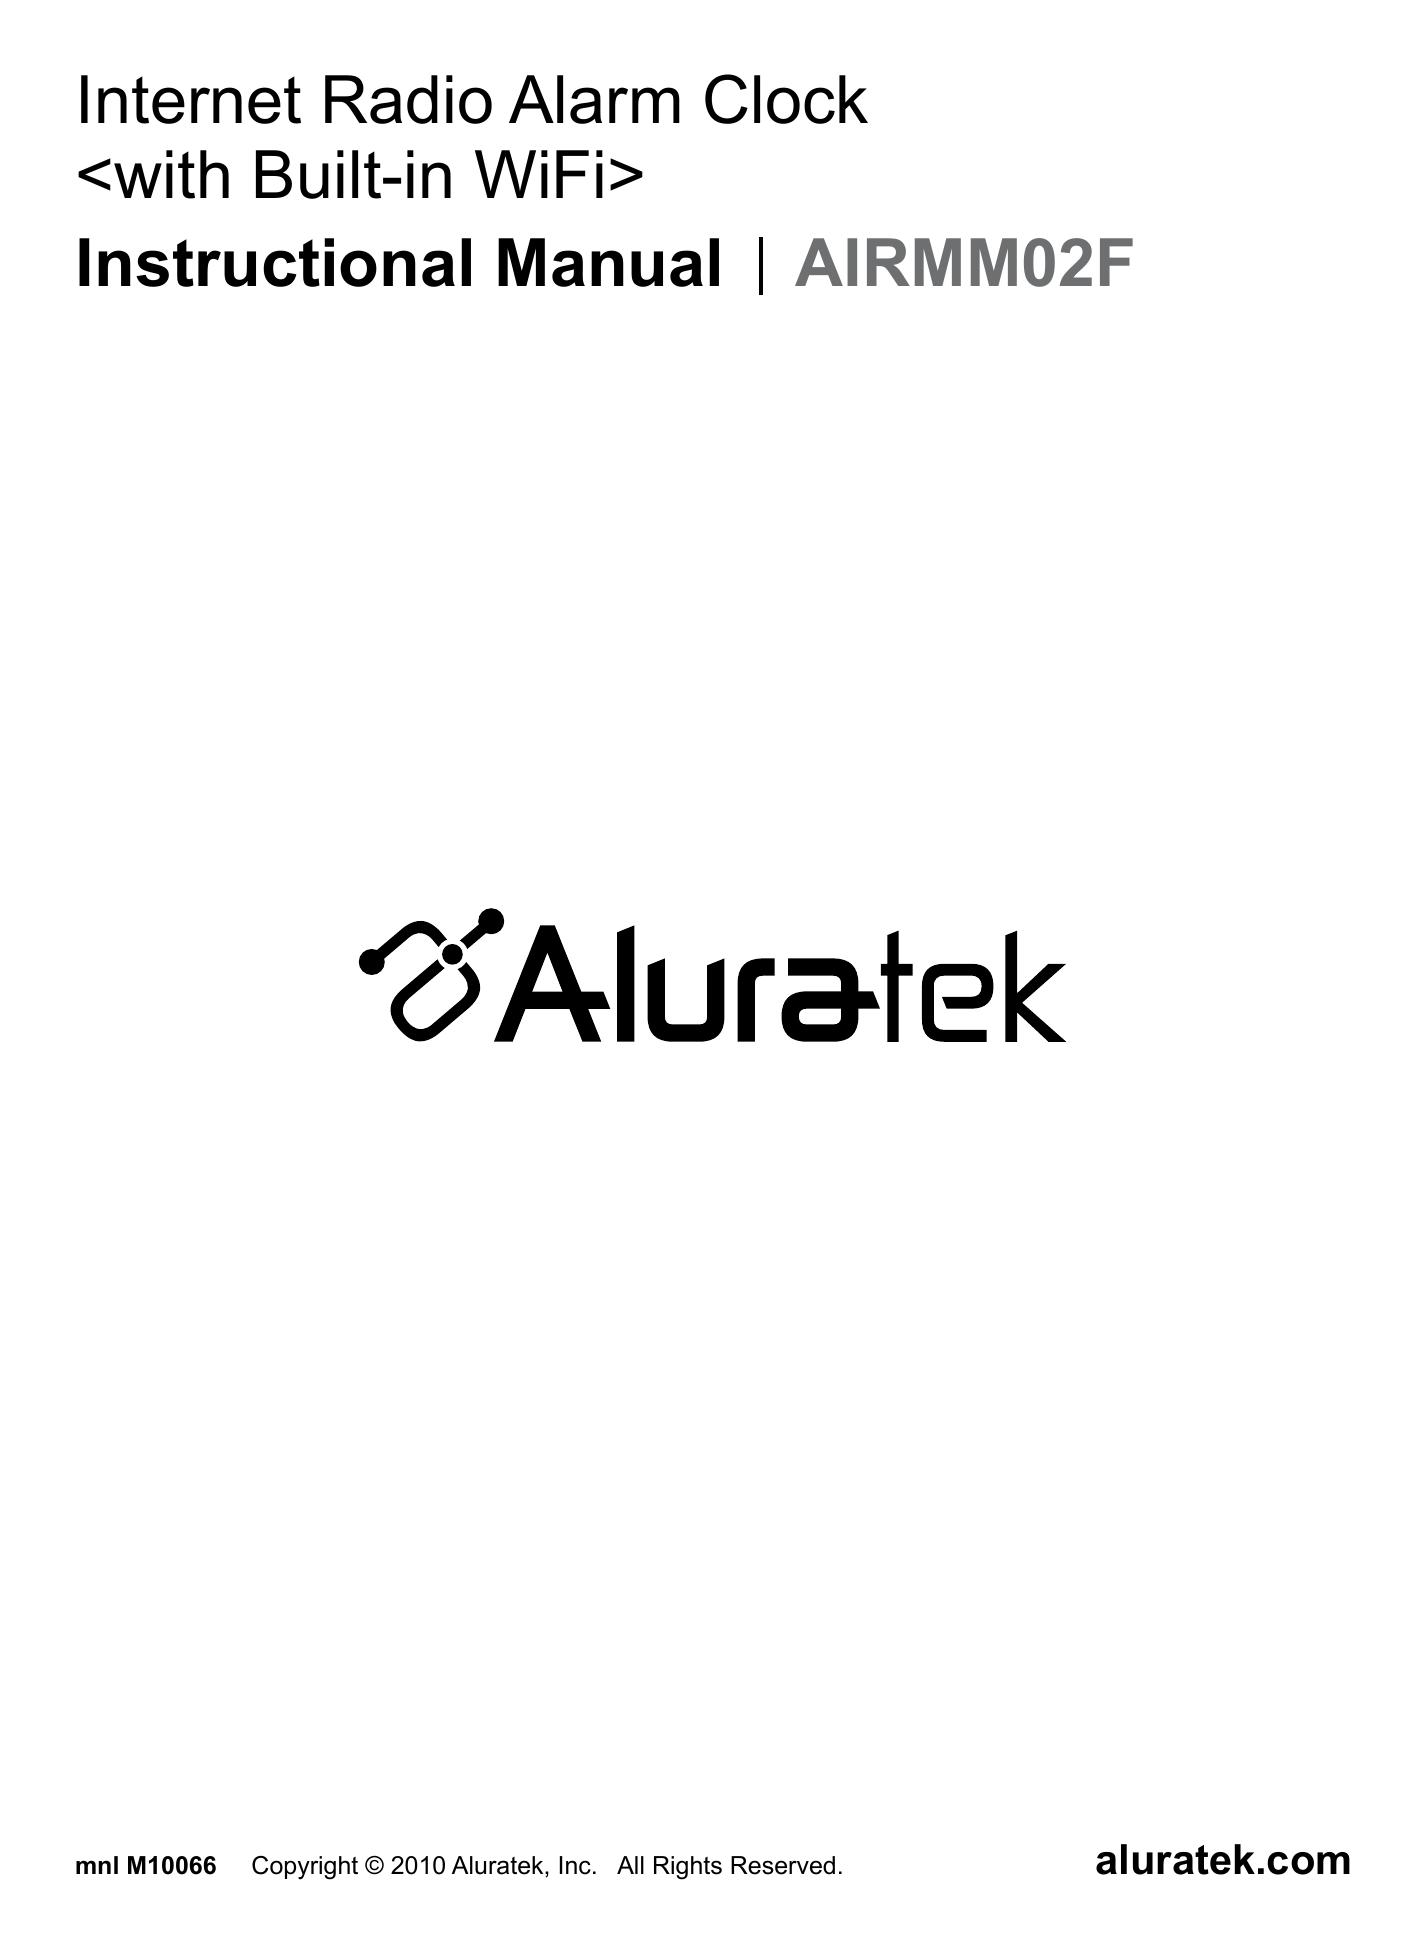 Aluratek AIRMM02F Clock Radio User Manual